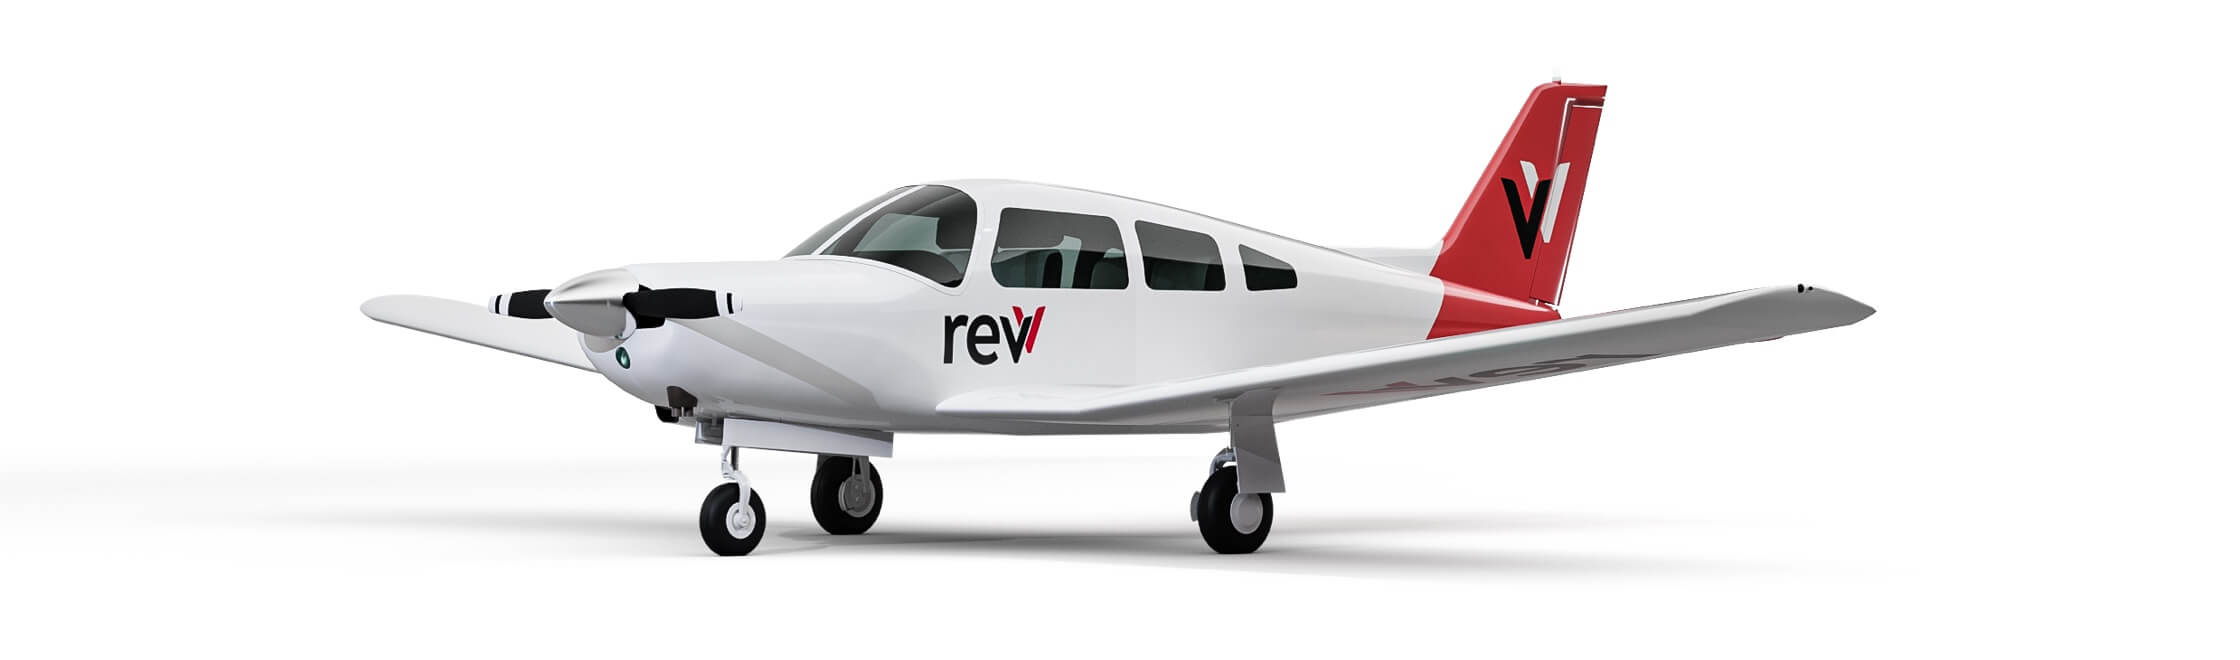 Revv Piper Arrow plane